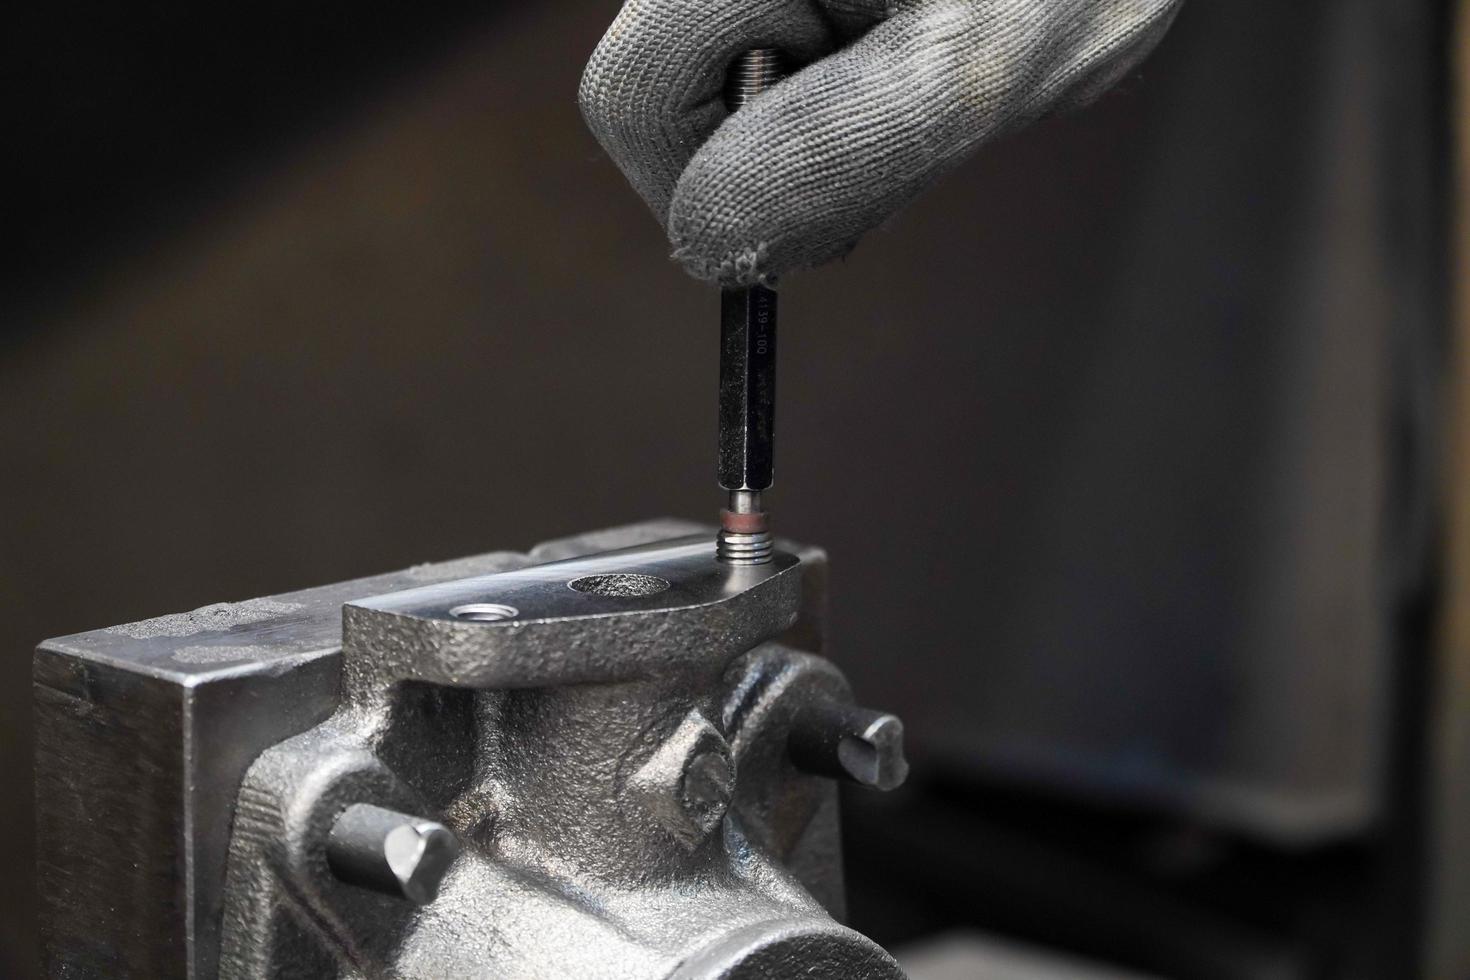 Inspección mecánica de piezas de trabajo de calibre de enchufe de rosca industrial, concepto industrial foto